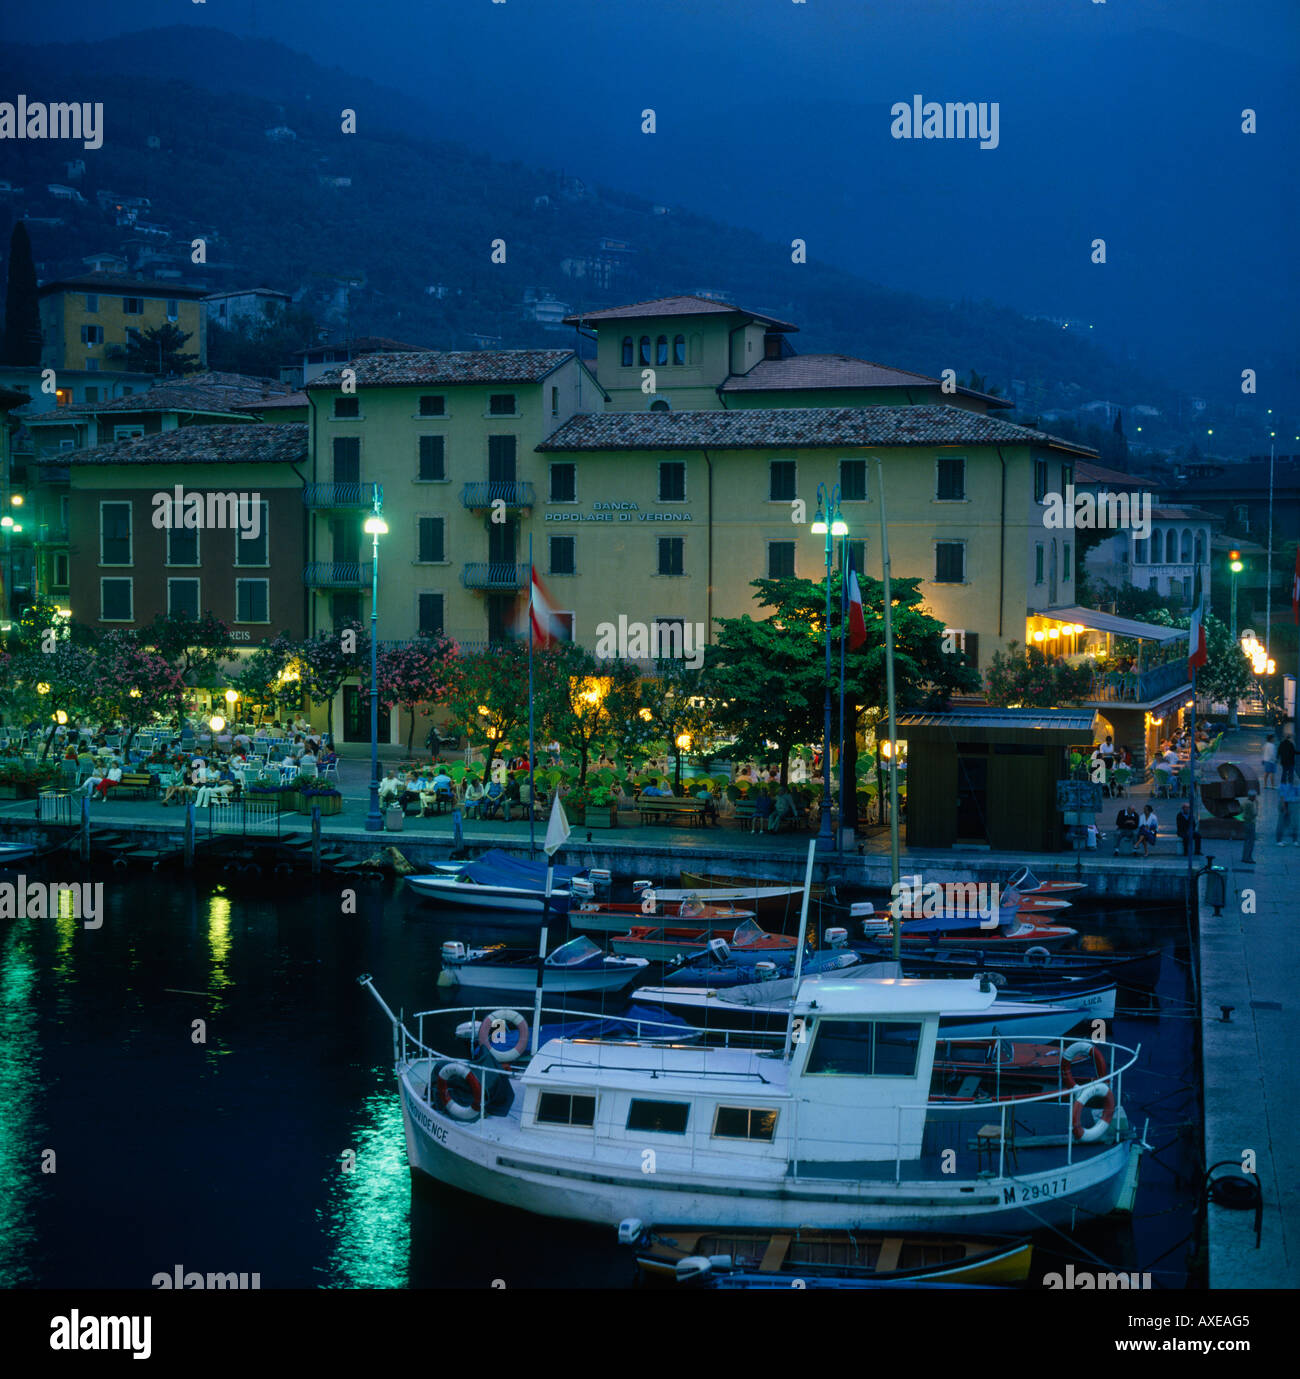 Uferpromenade von Malcesine Hafen in der Abenddämmerung mit Restaurants Boote mit Hügeln im Hintergrund auf See Garda Lombardei Provinz Italien Stockfoto